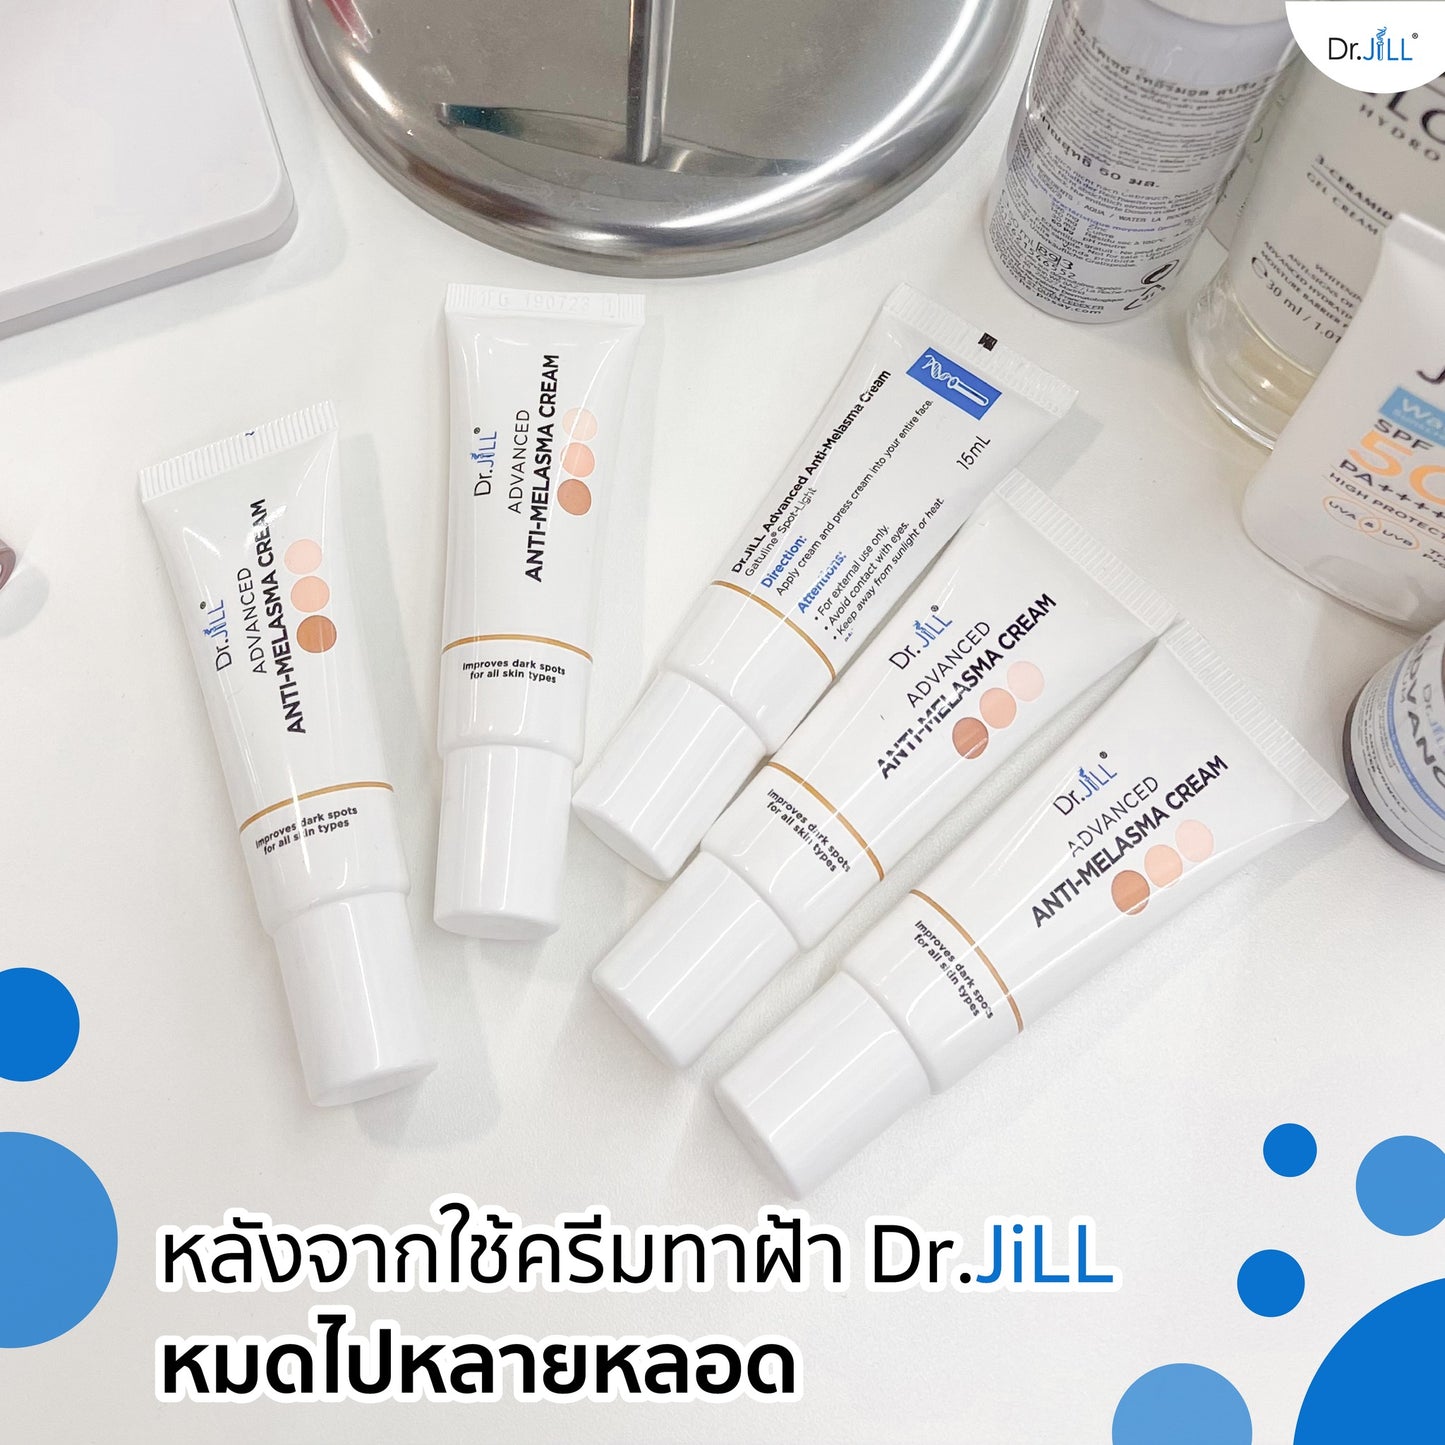 Dr.JiLL Advanced Anti-Melasma Cream 15 ml.